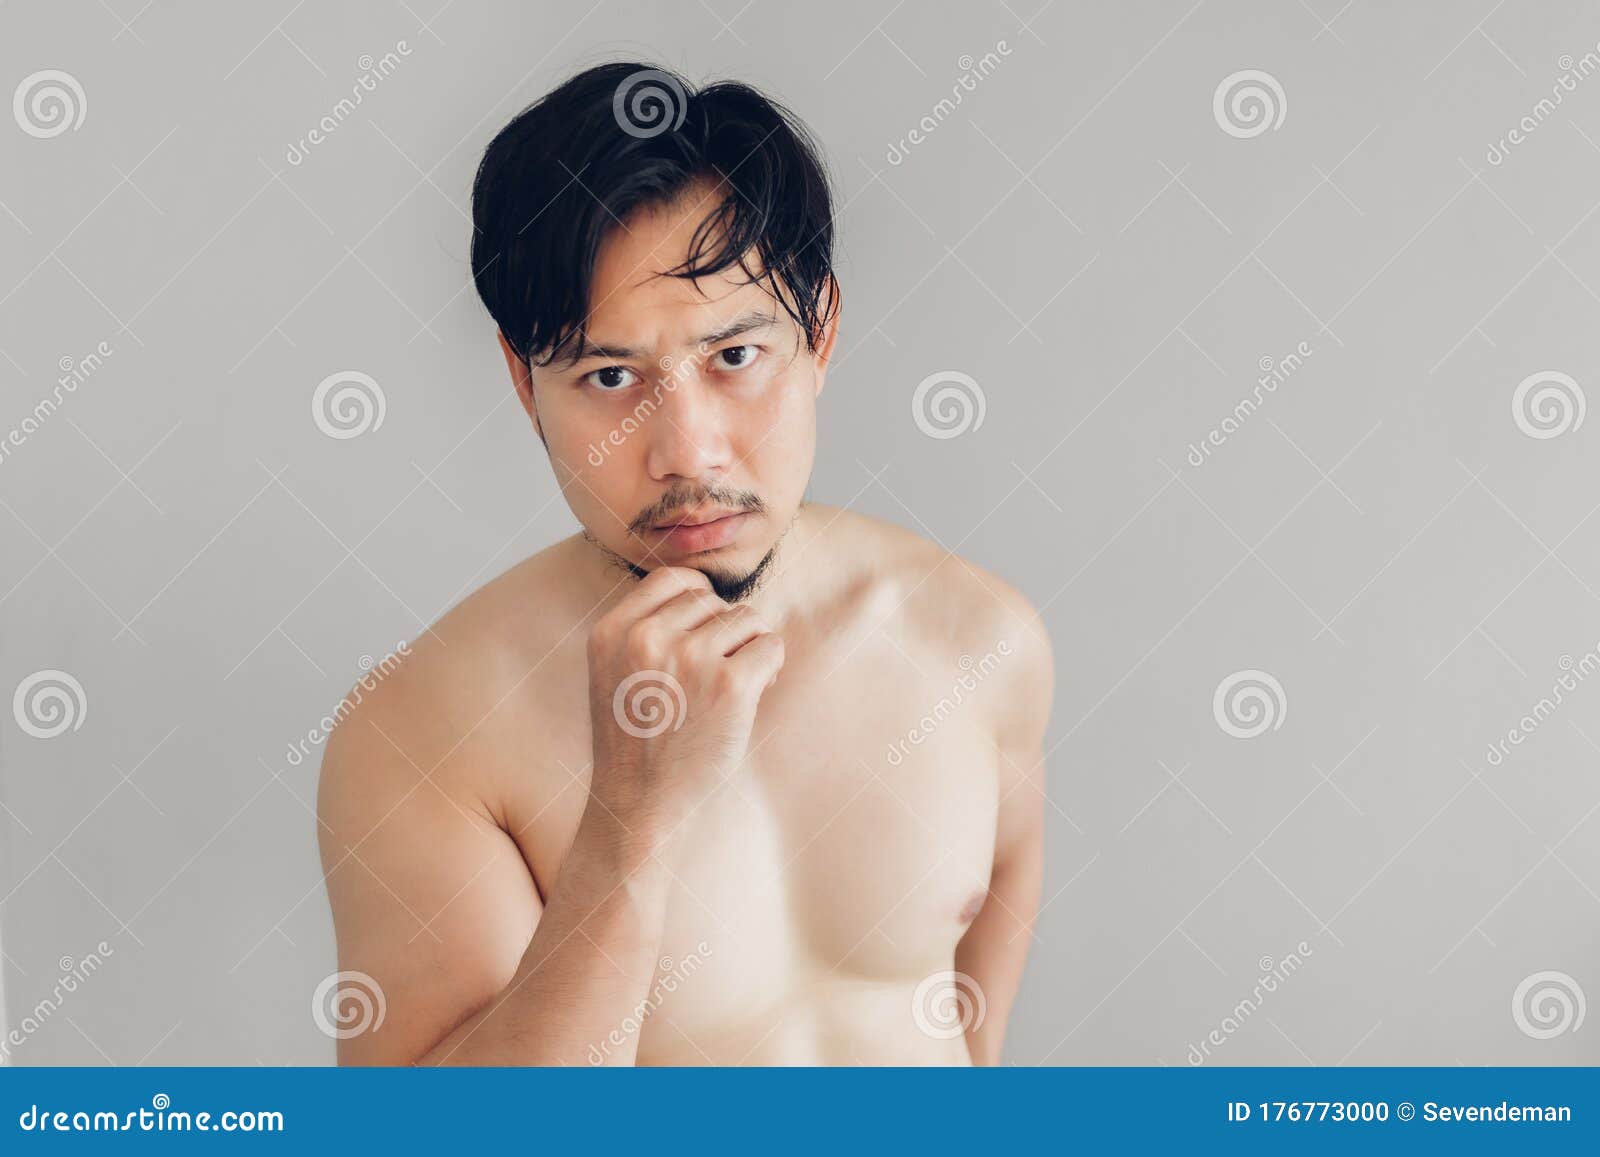 裸胸男想帅库存照片. 图片包括有肌肉, 强壮男子, 汉语, 男性, 设计  image